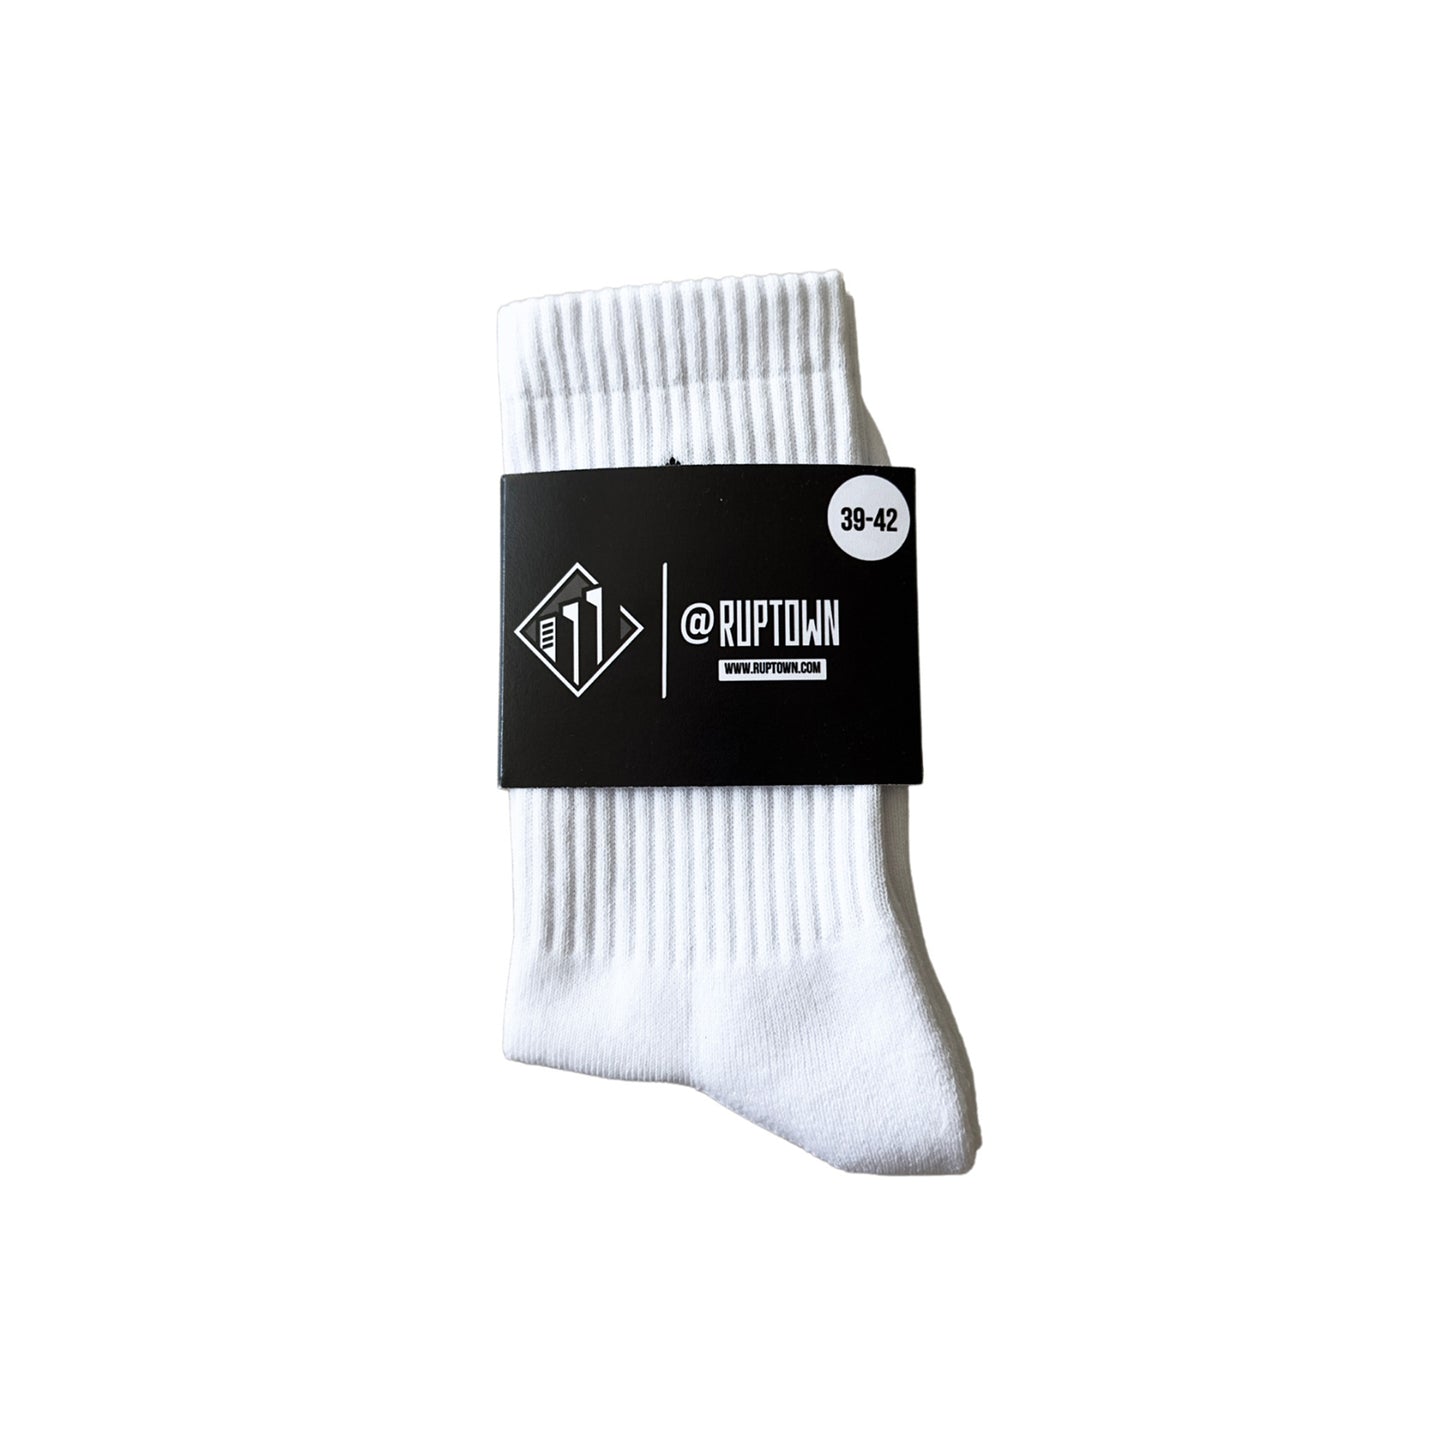 RUPTOWN socks - 2 pack